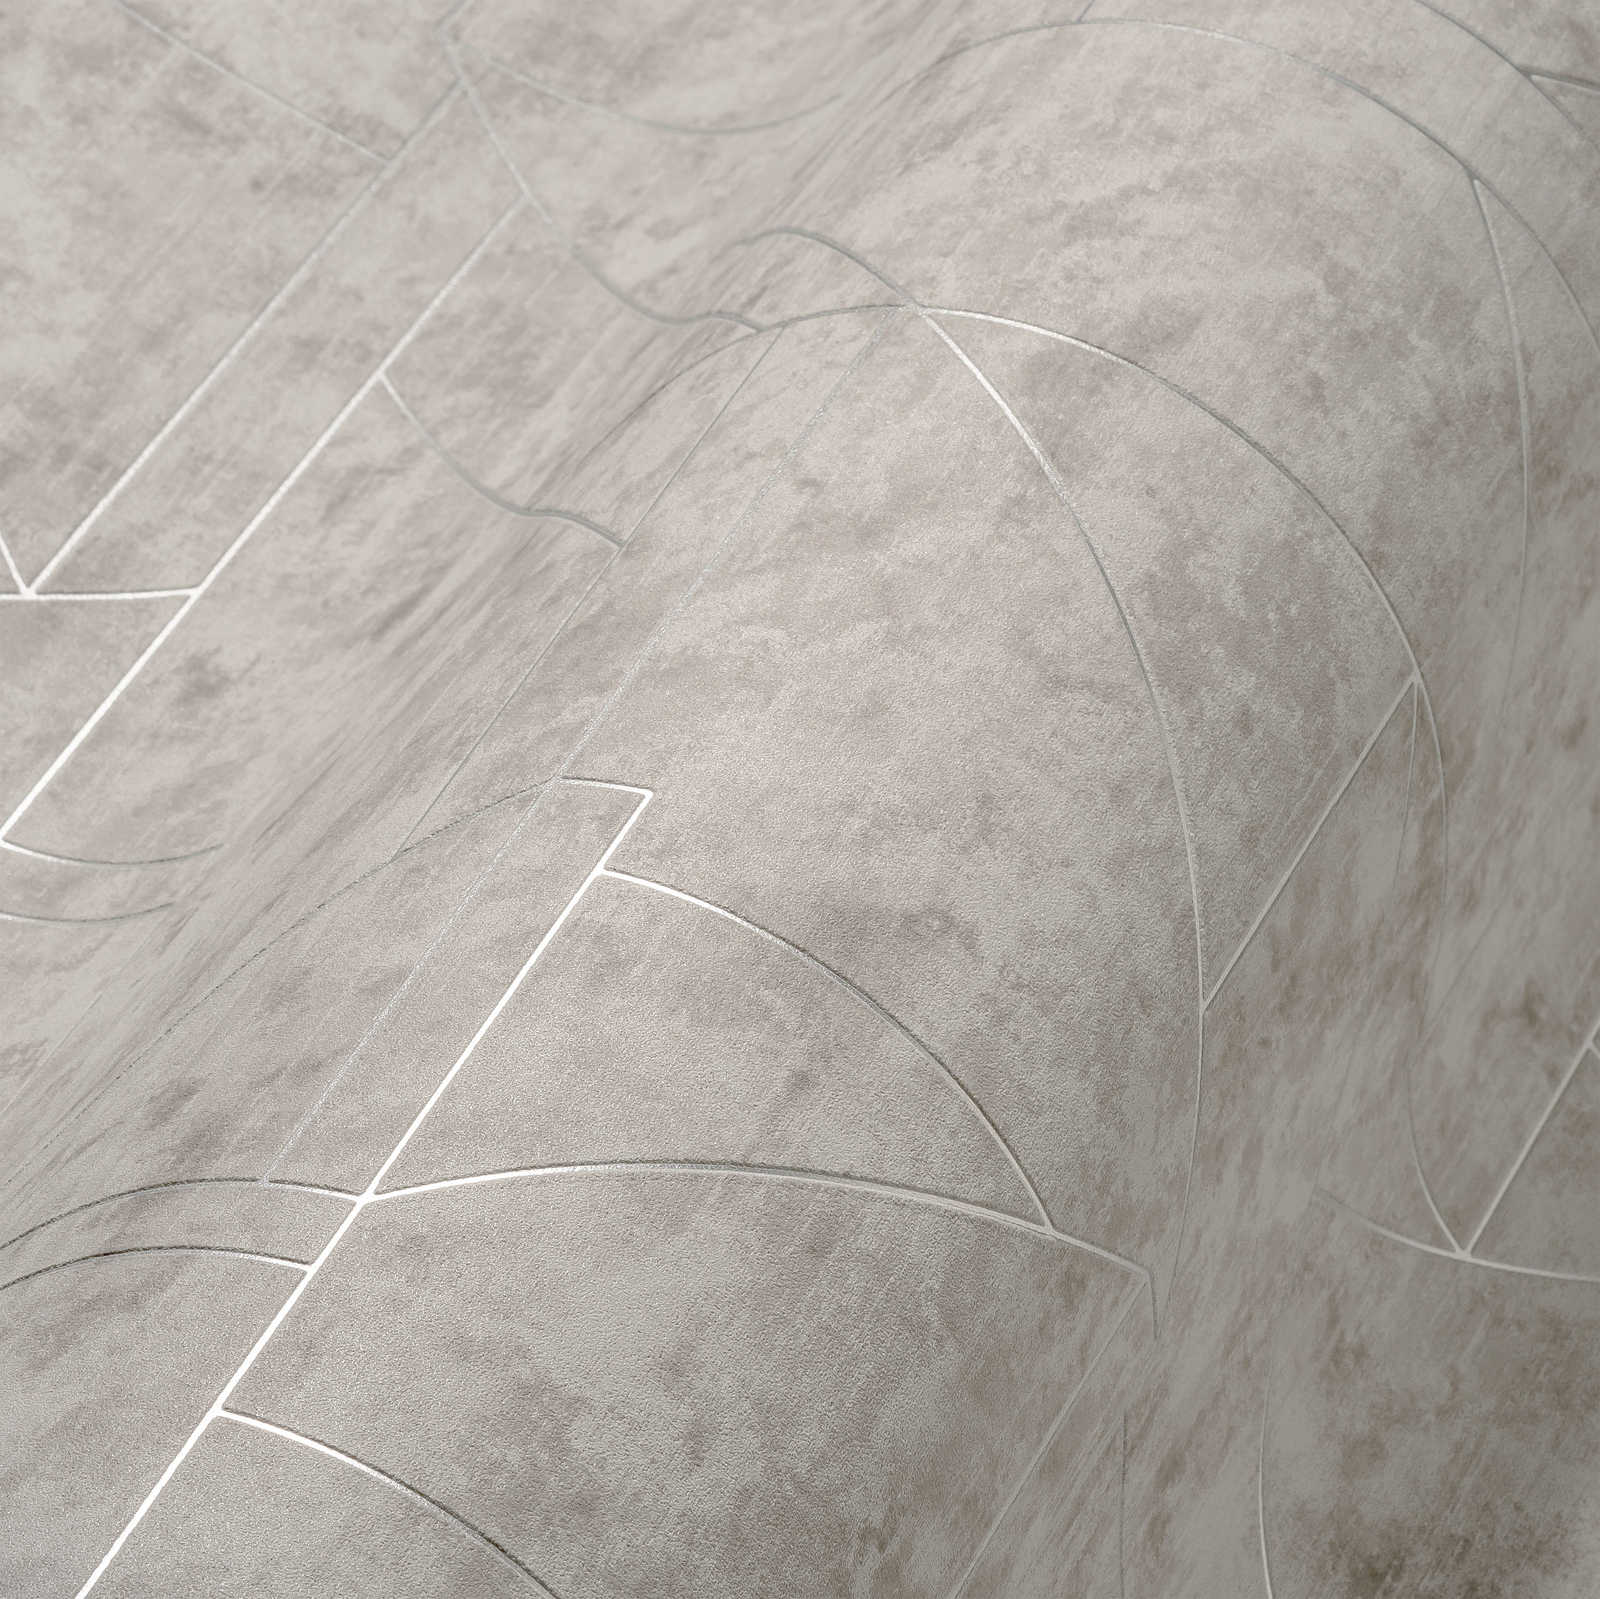             Grafische Vliestapete mit Linienmuster – Grau, Silber
        